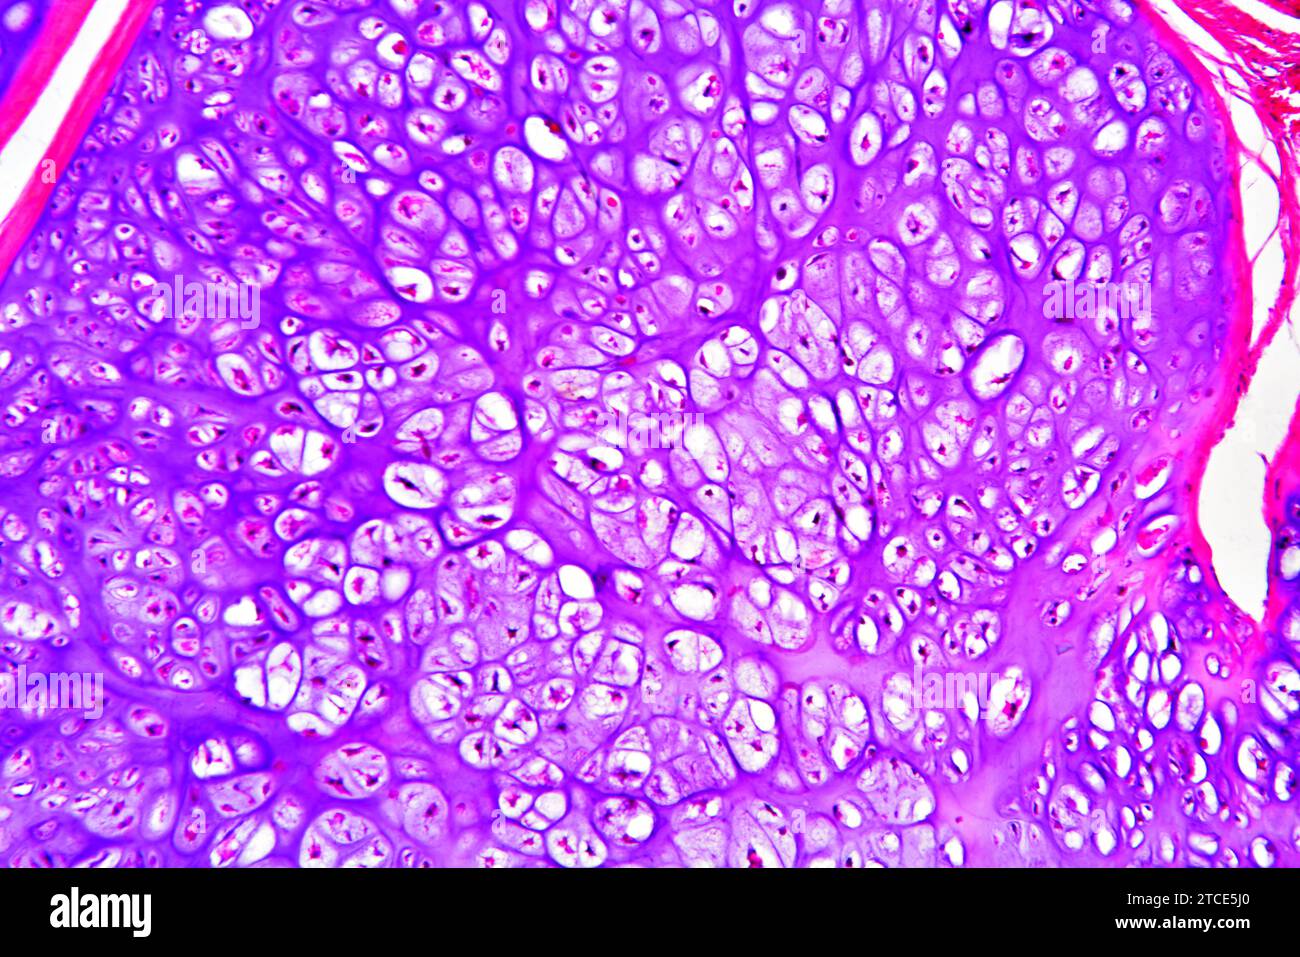 Condrosoma osseo pubico umano (tumore benigno) che mostra condrociti e matrice. Microscopio ottico X100. Foto Stock